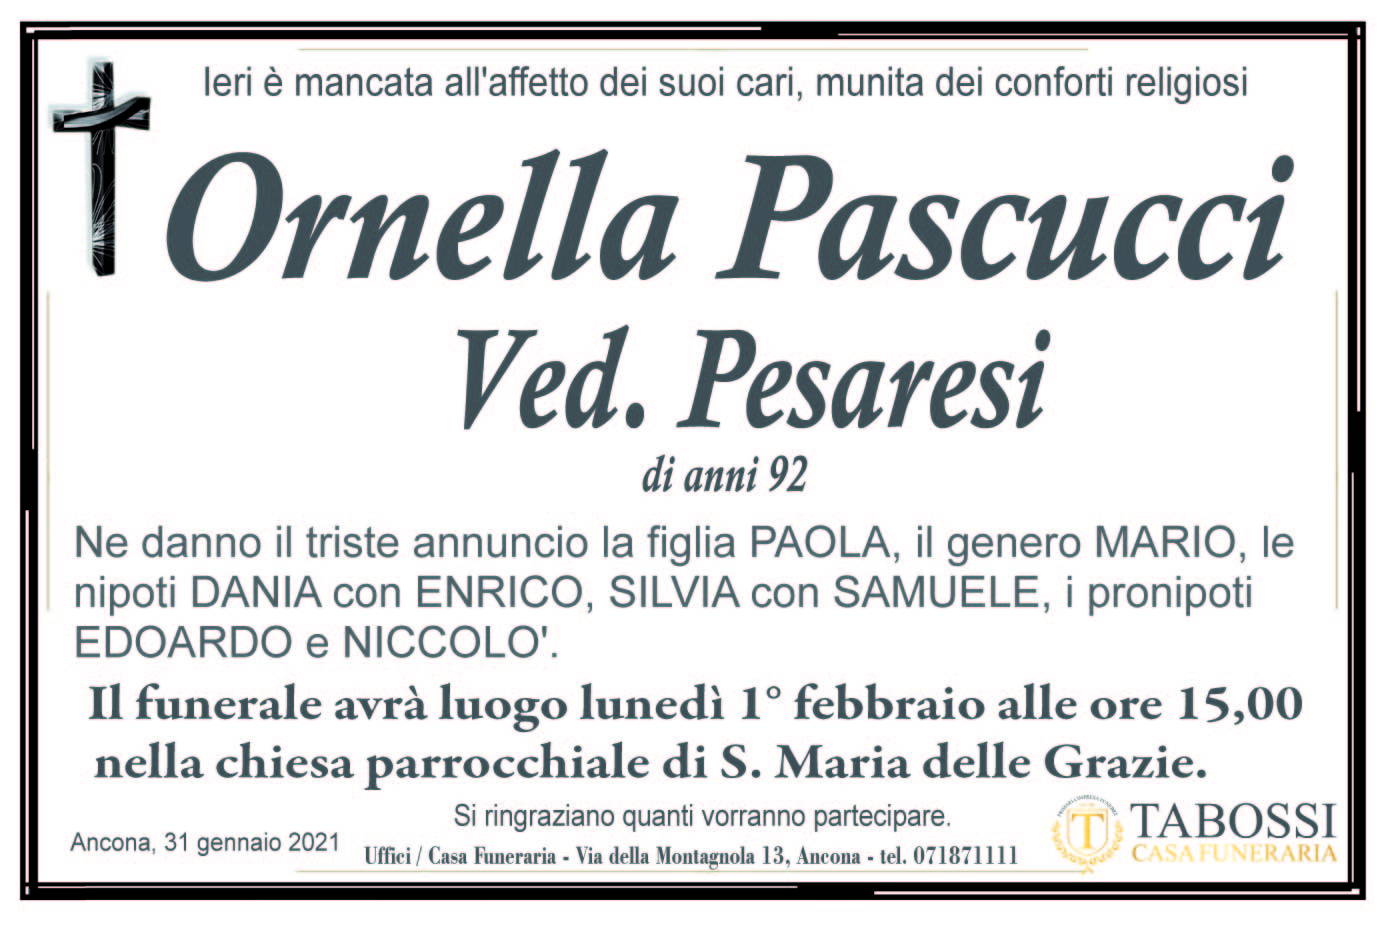 Ornella Pascucci